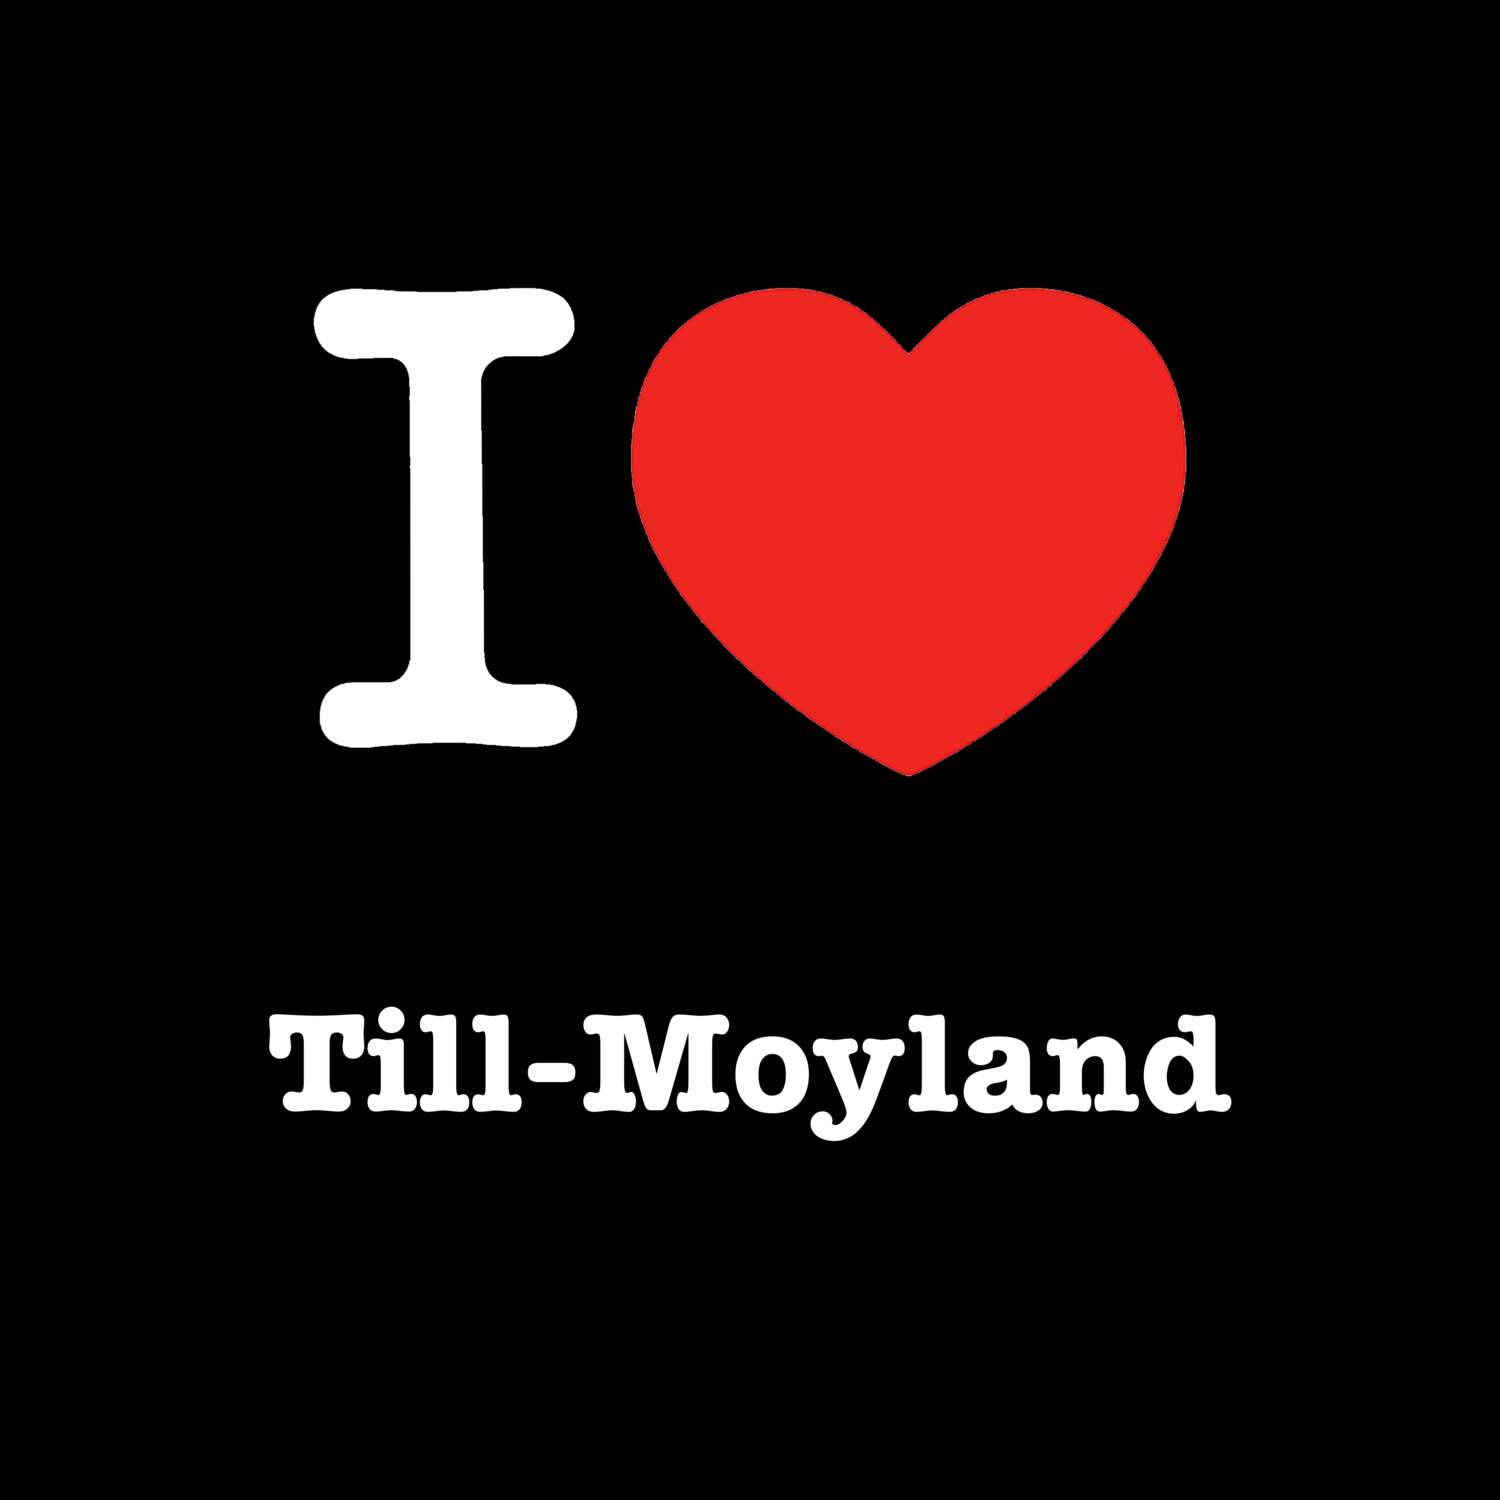 Till-Moyland T-Shirt »I love«